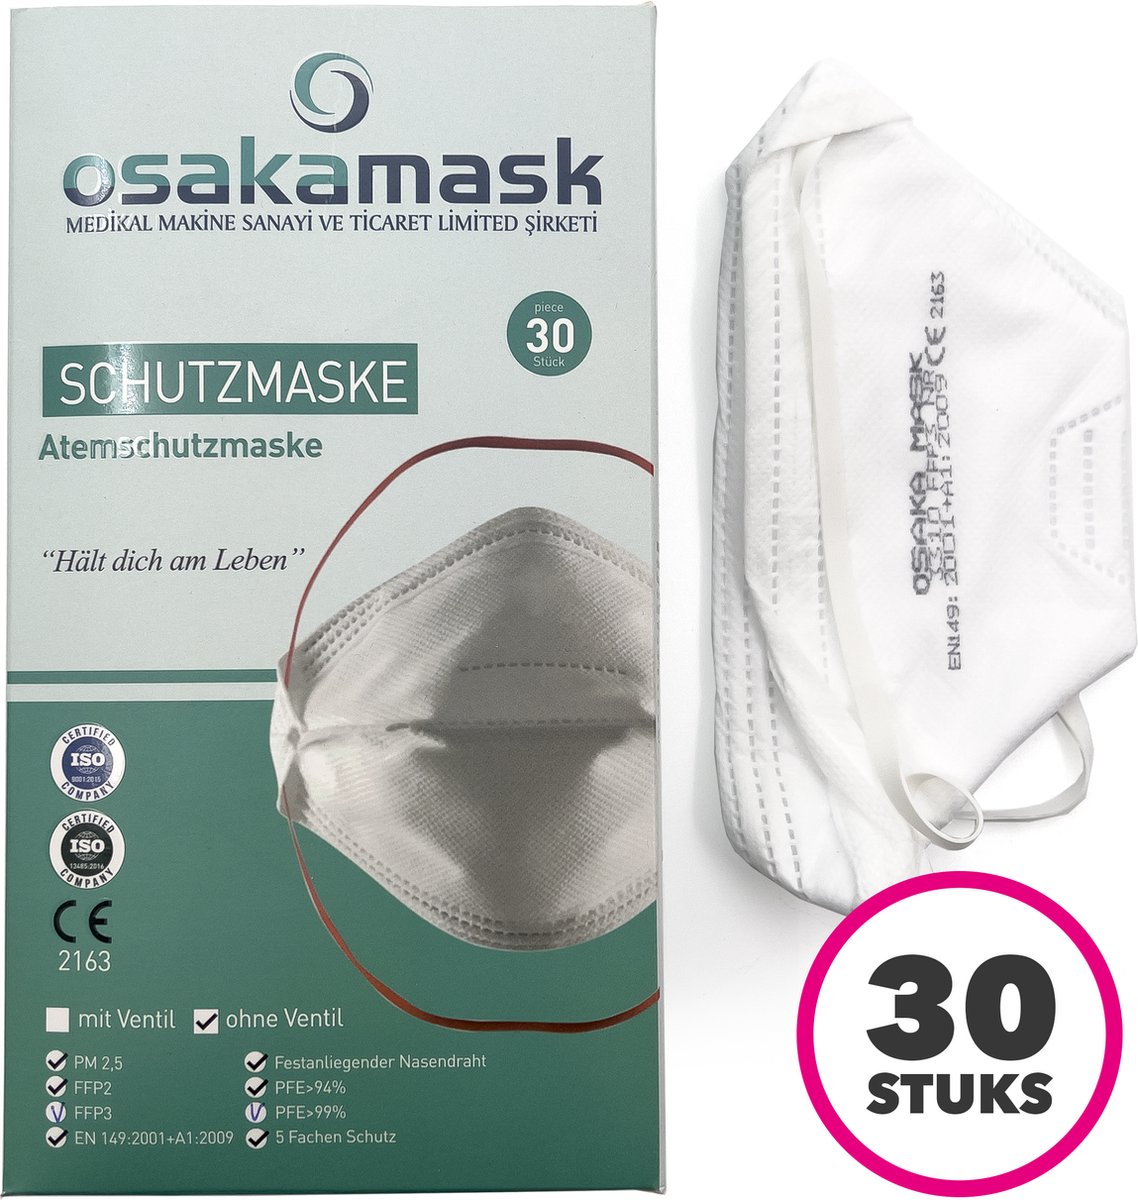 FFP3 mondmasker - Wegwerp mondkapjes - Officieel gecertificeerd - Medische mondkapjes - Chirurgische mondmaskers - Stoffen mondkapjes - Filter mondmaskers - 30 Stuks